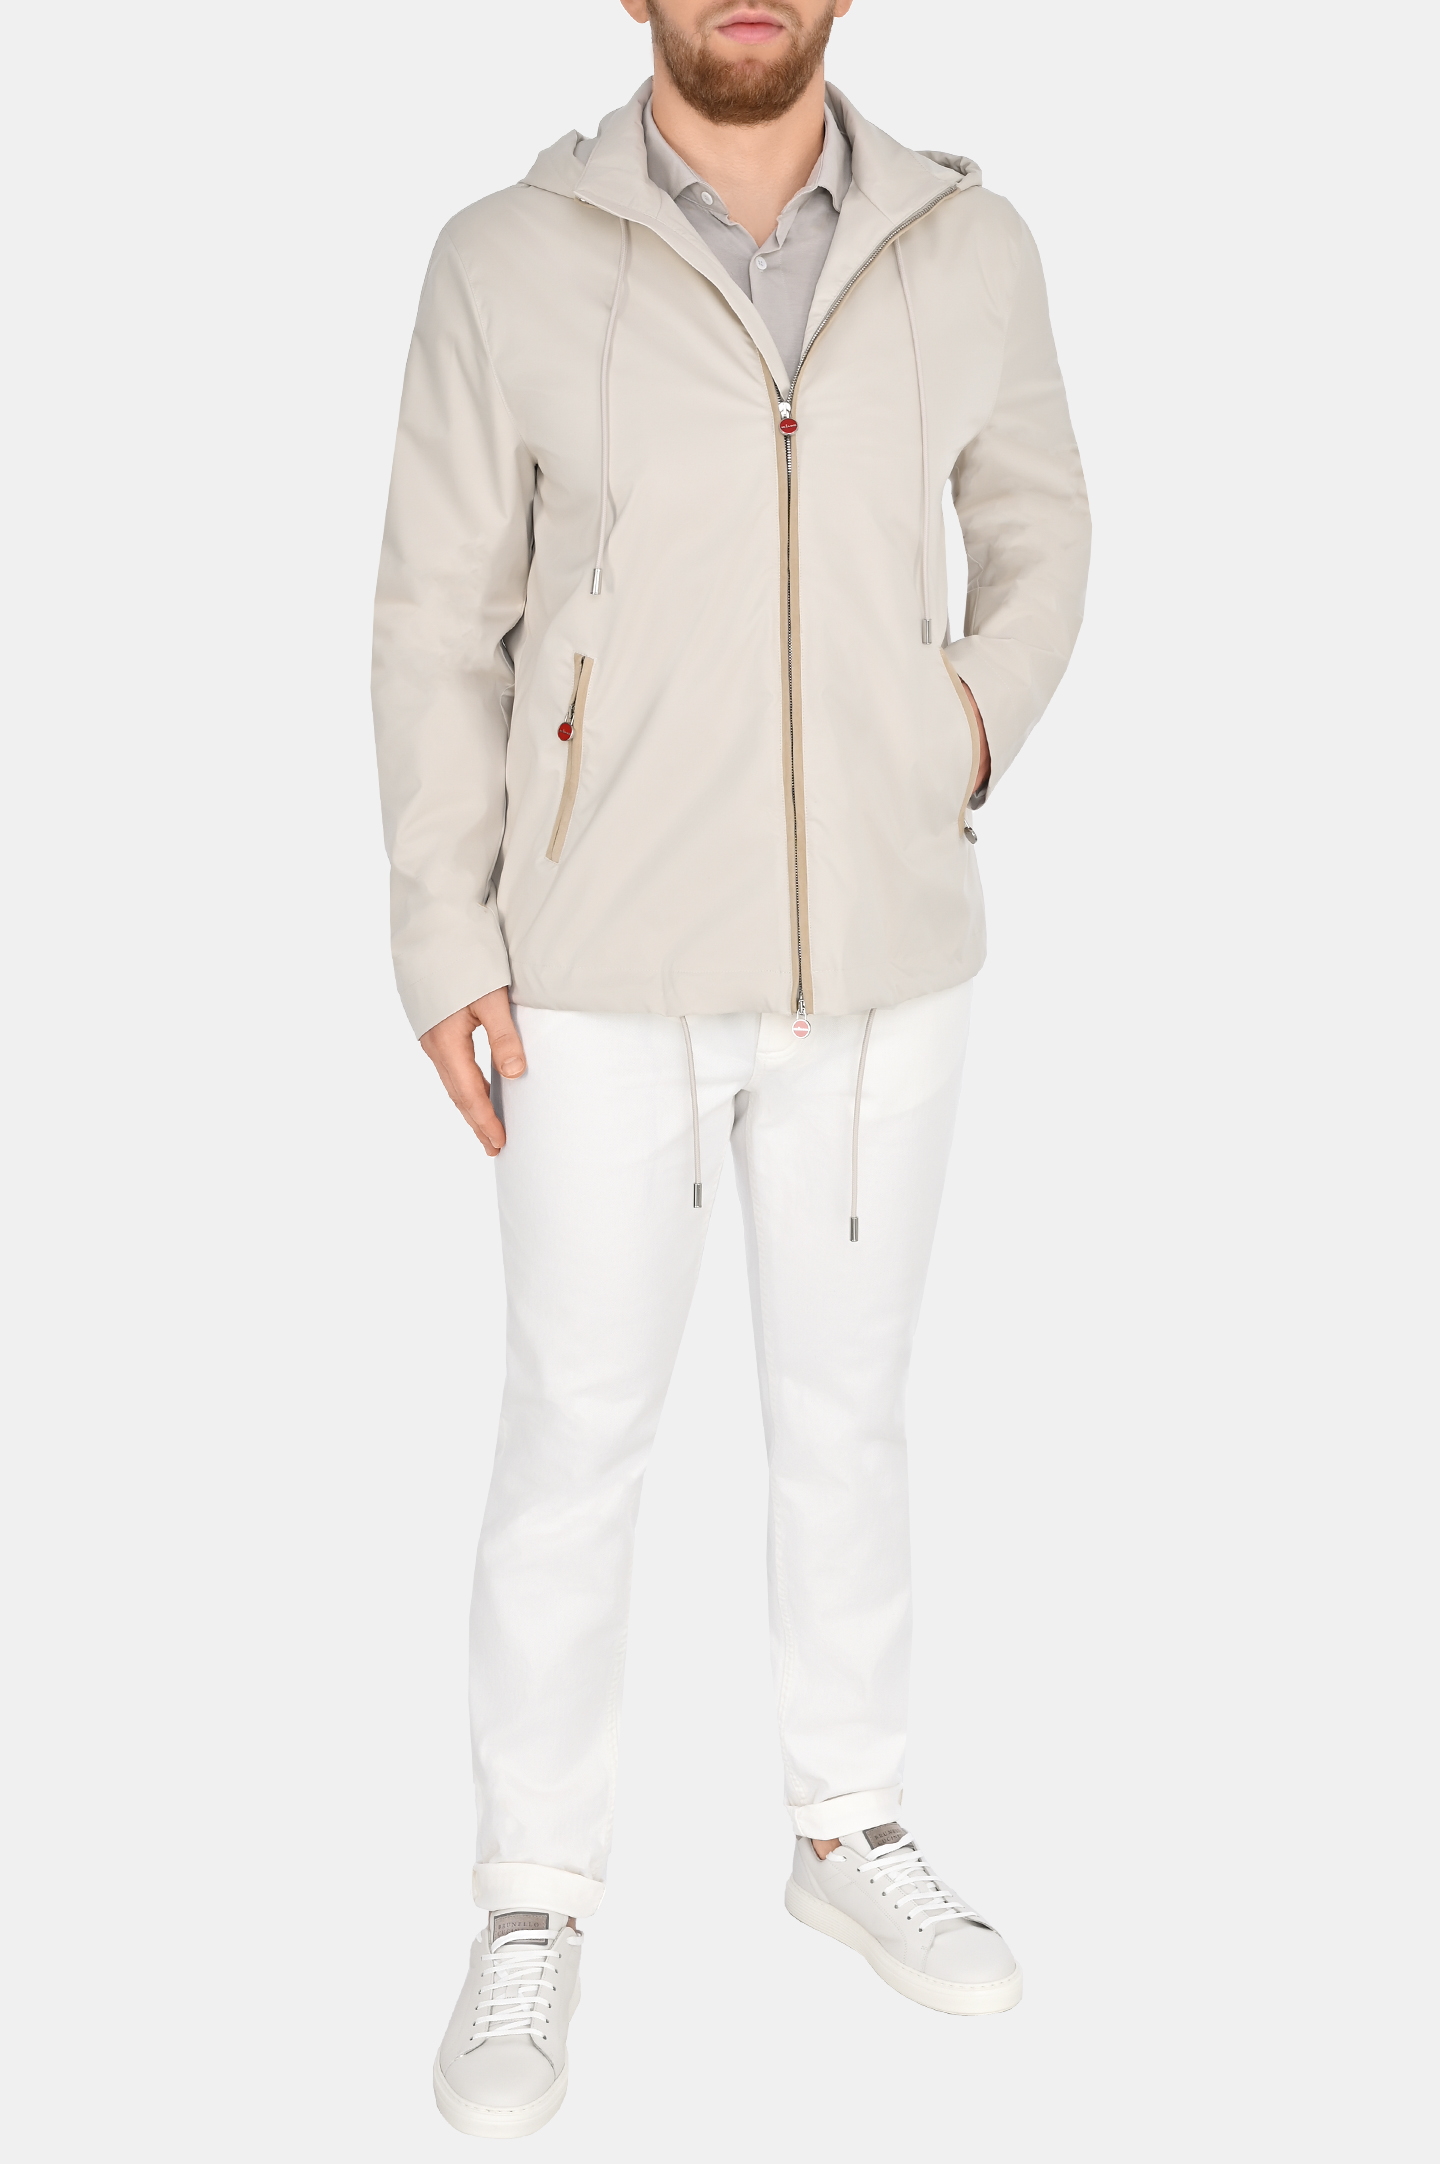 Куртка с капюшоном  KITON UW1780V0835C0, цвет: Молочный, Мужской